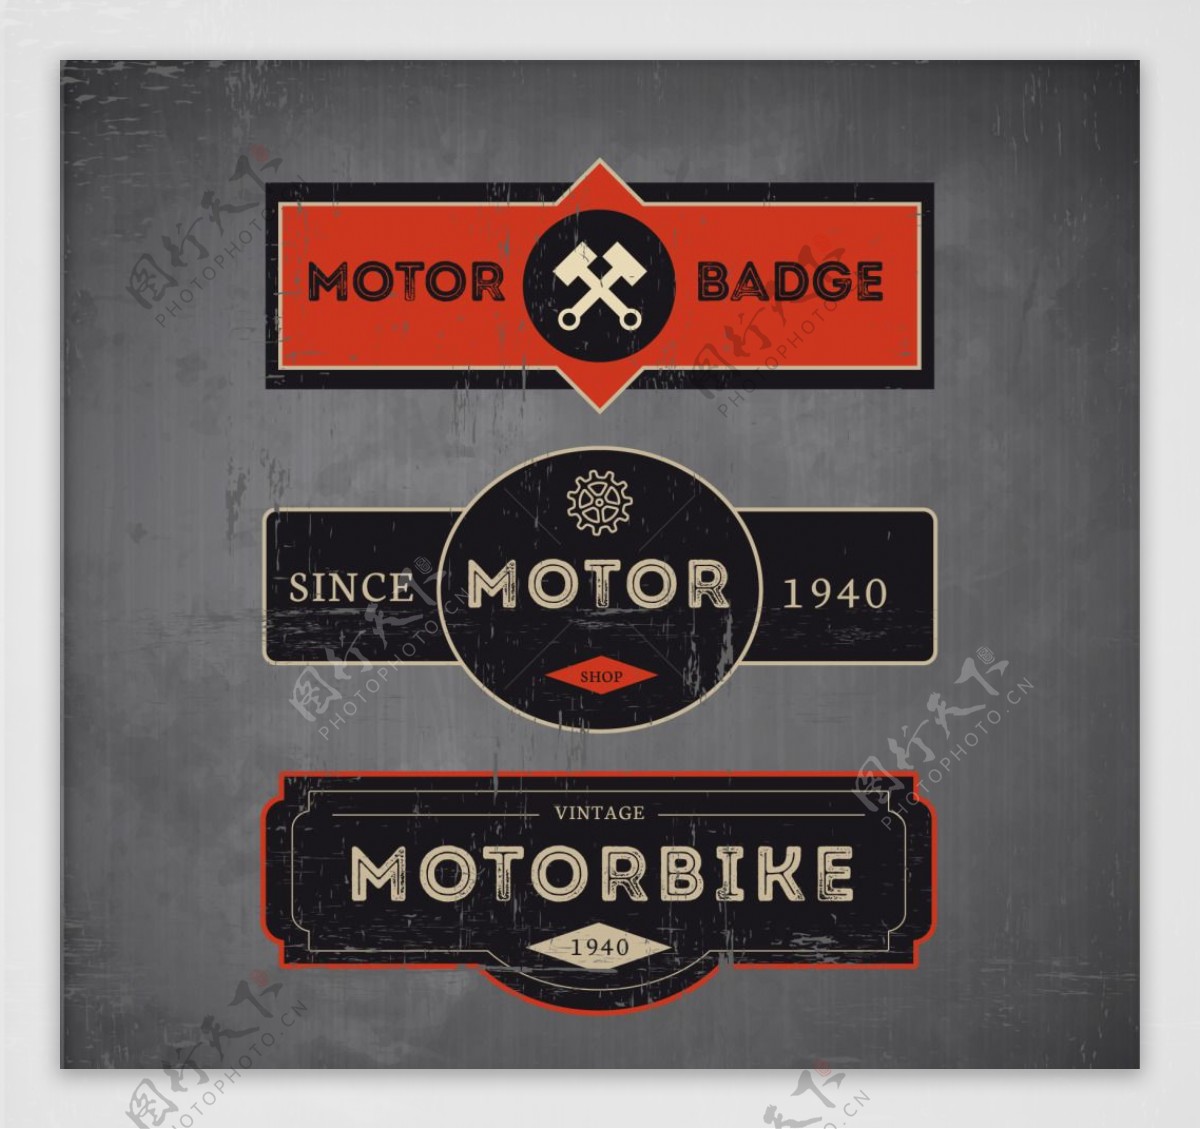 复古风格的三辆摩托车徽章集